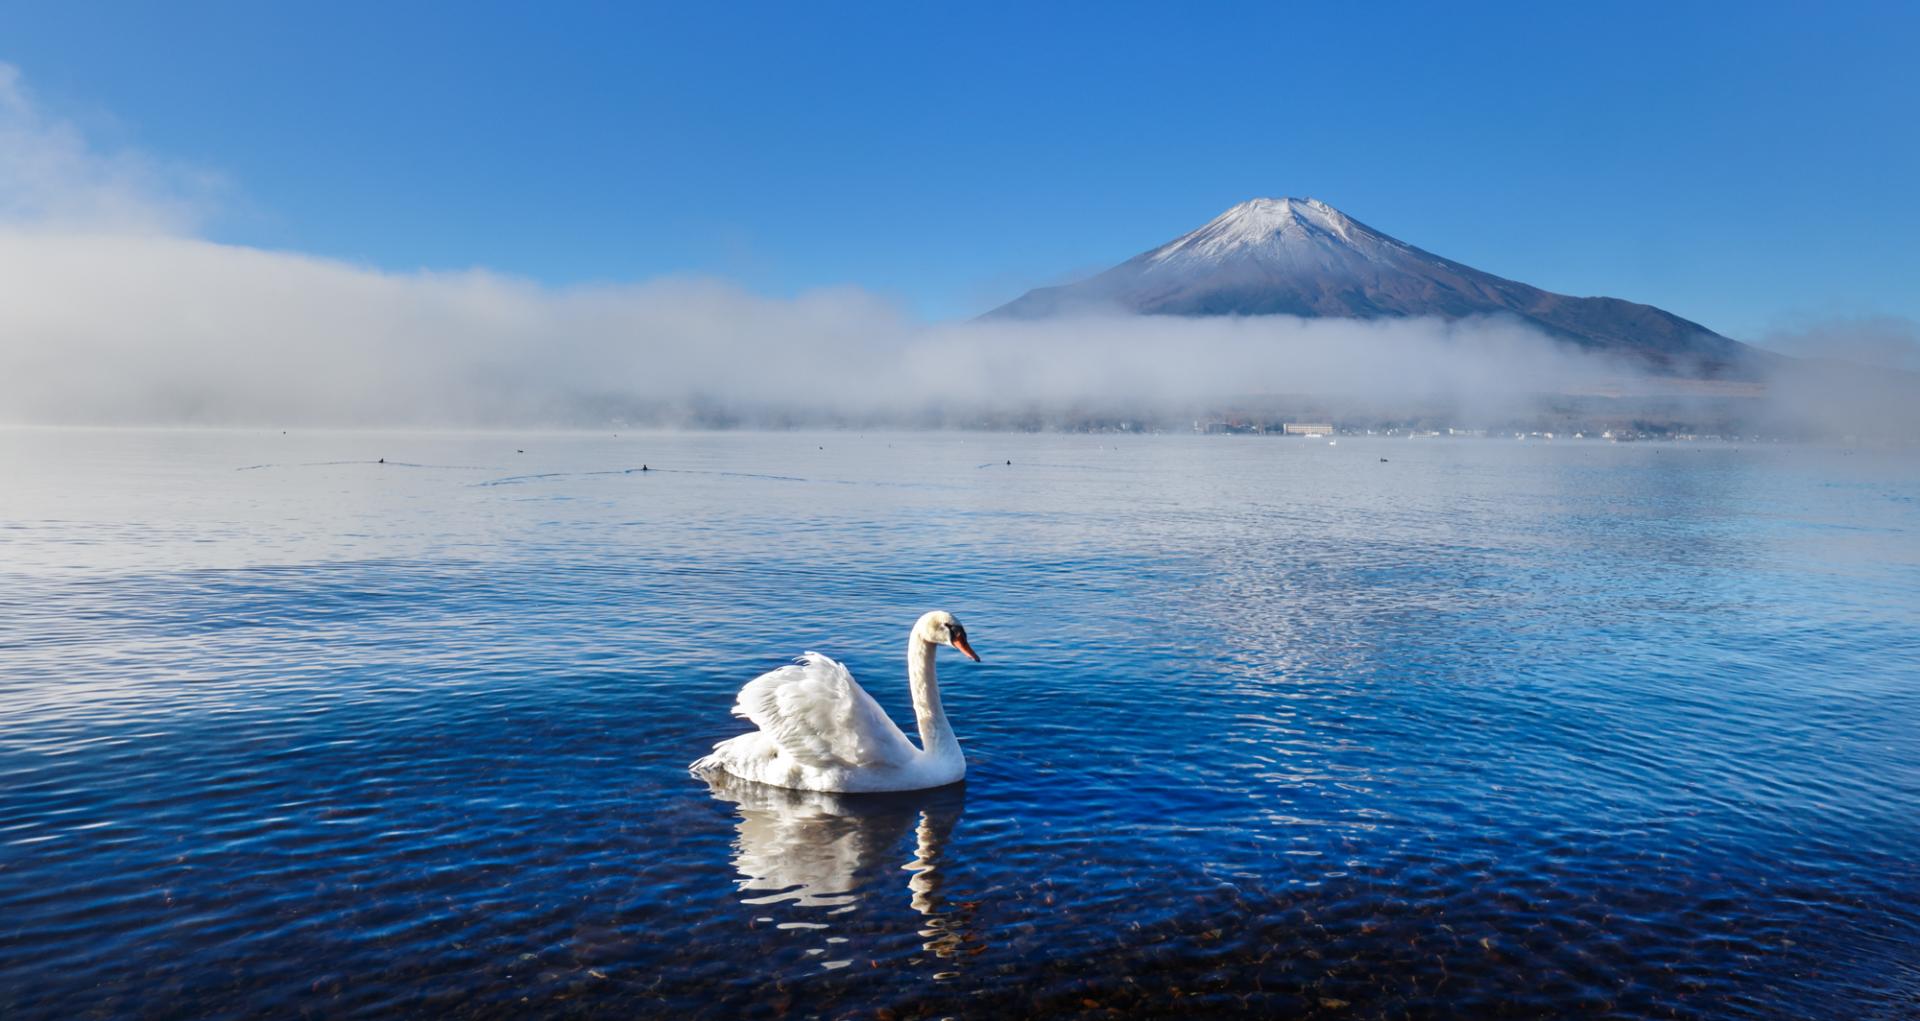 European Photography Awards Winner - Dreamy winter in japan